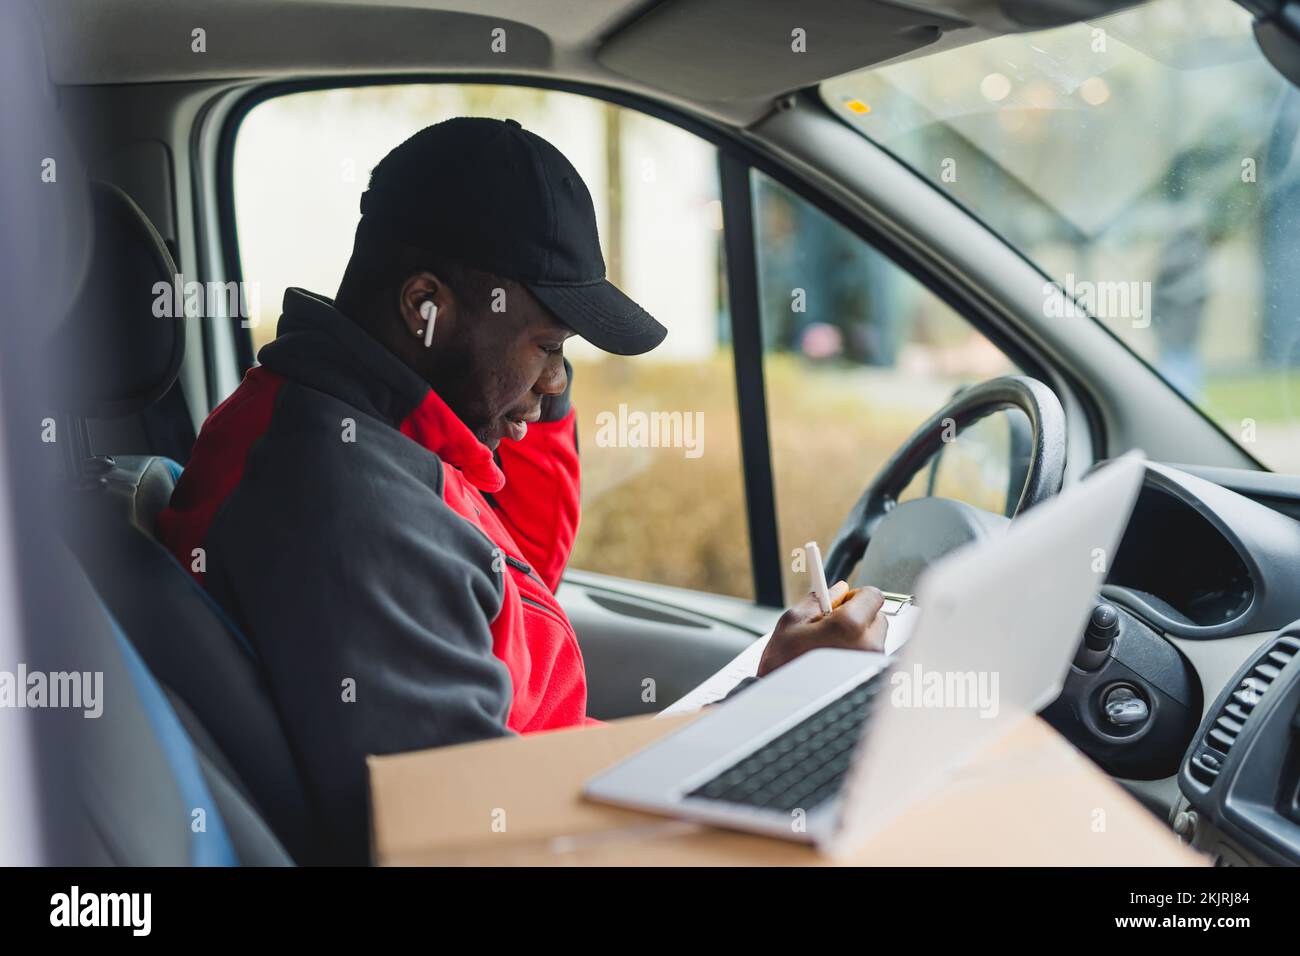 Jeune adulte noir livreur assis sur le siège conducteur de la camionnette pour remplir les documents et travailler sur un ordinateur portable. Tir horizontal. Photo de haute qualité Banque D'Images